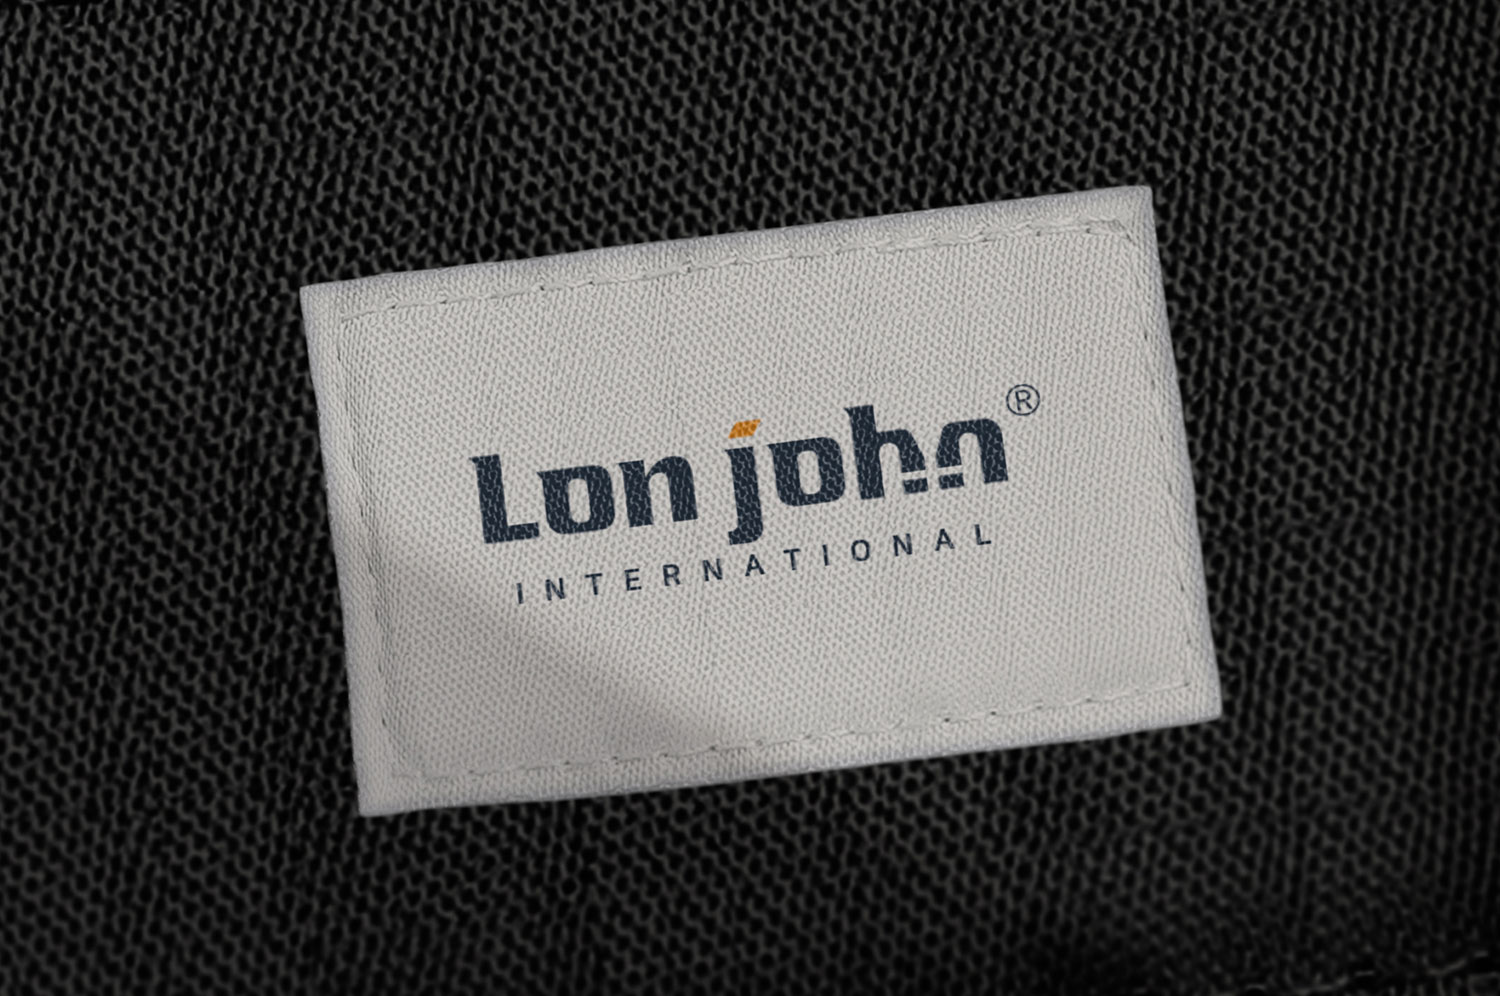 Lon john | DAE YOUNG S&S CO.,LTD